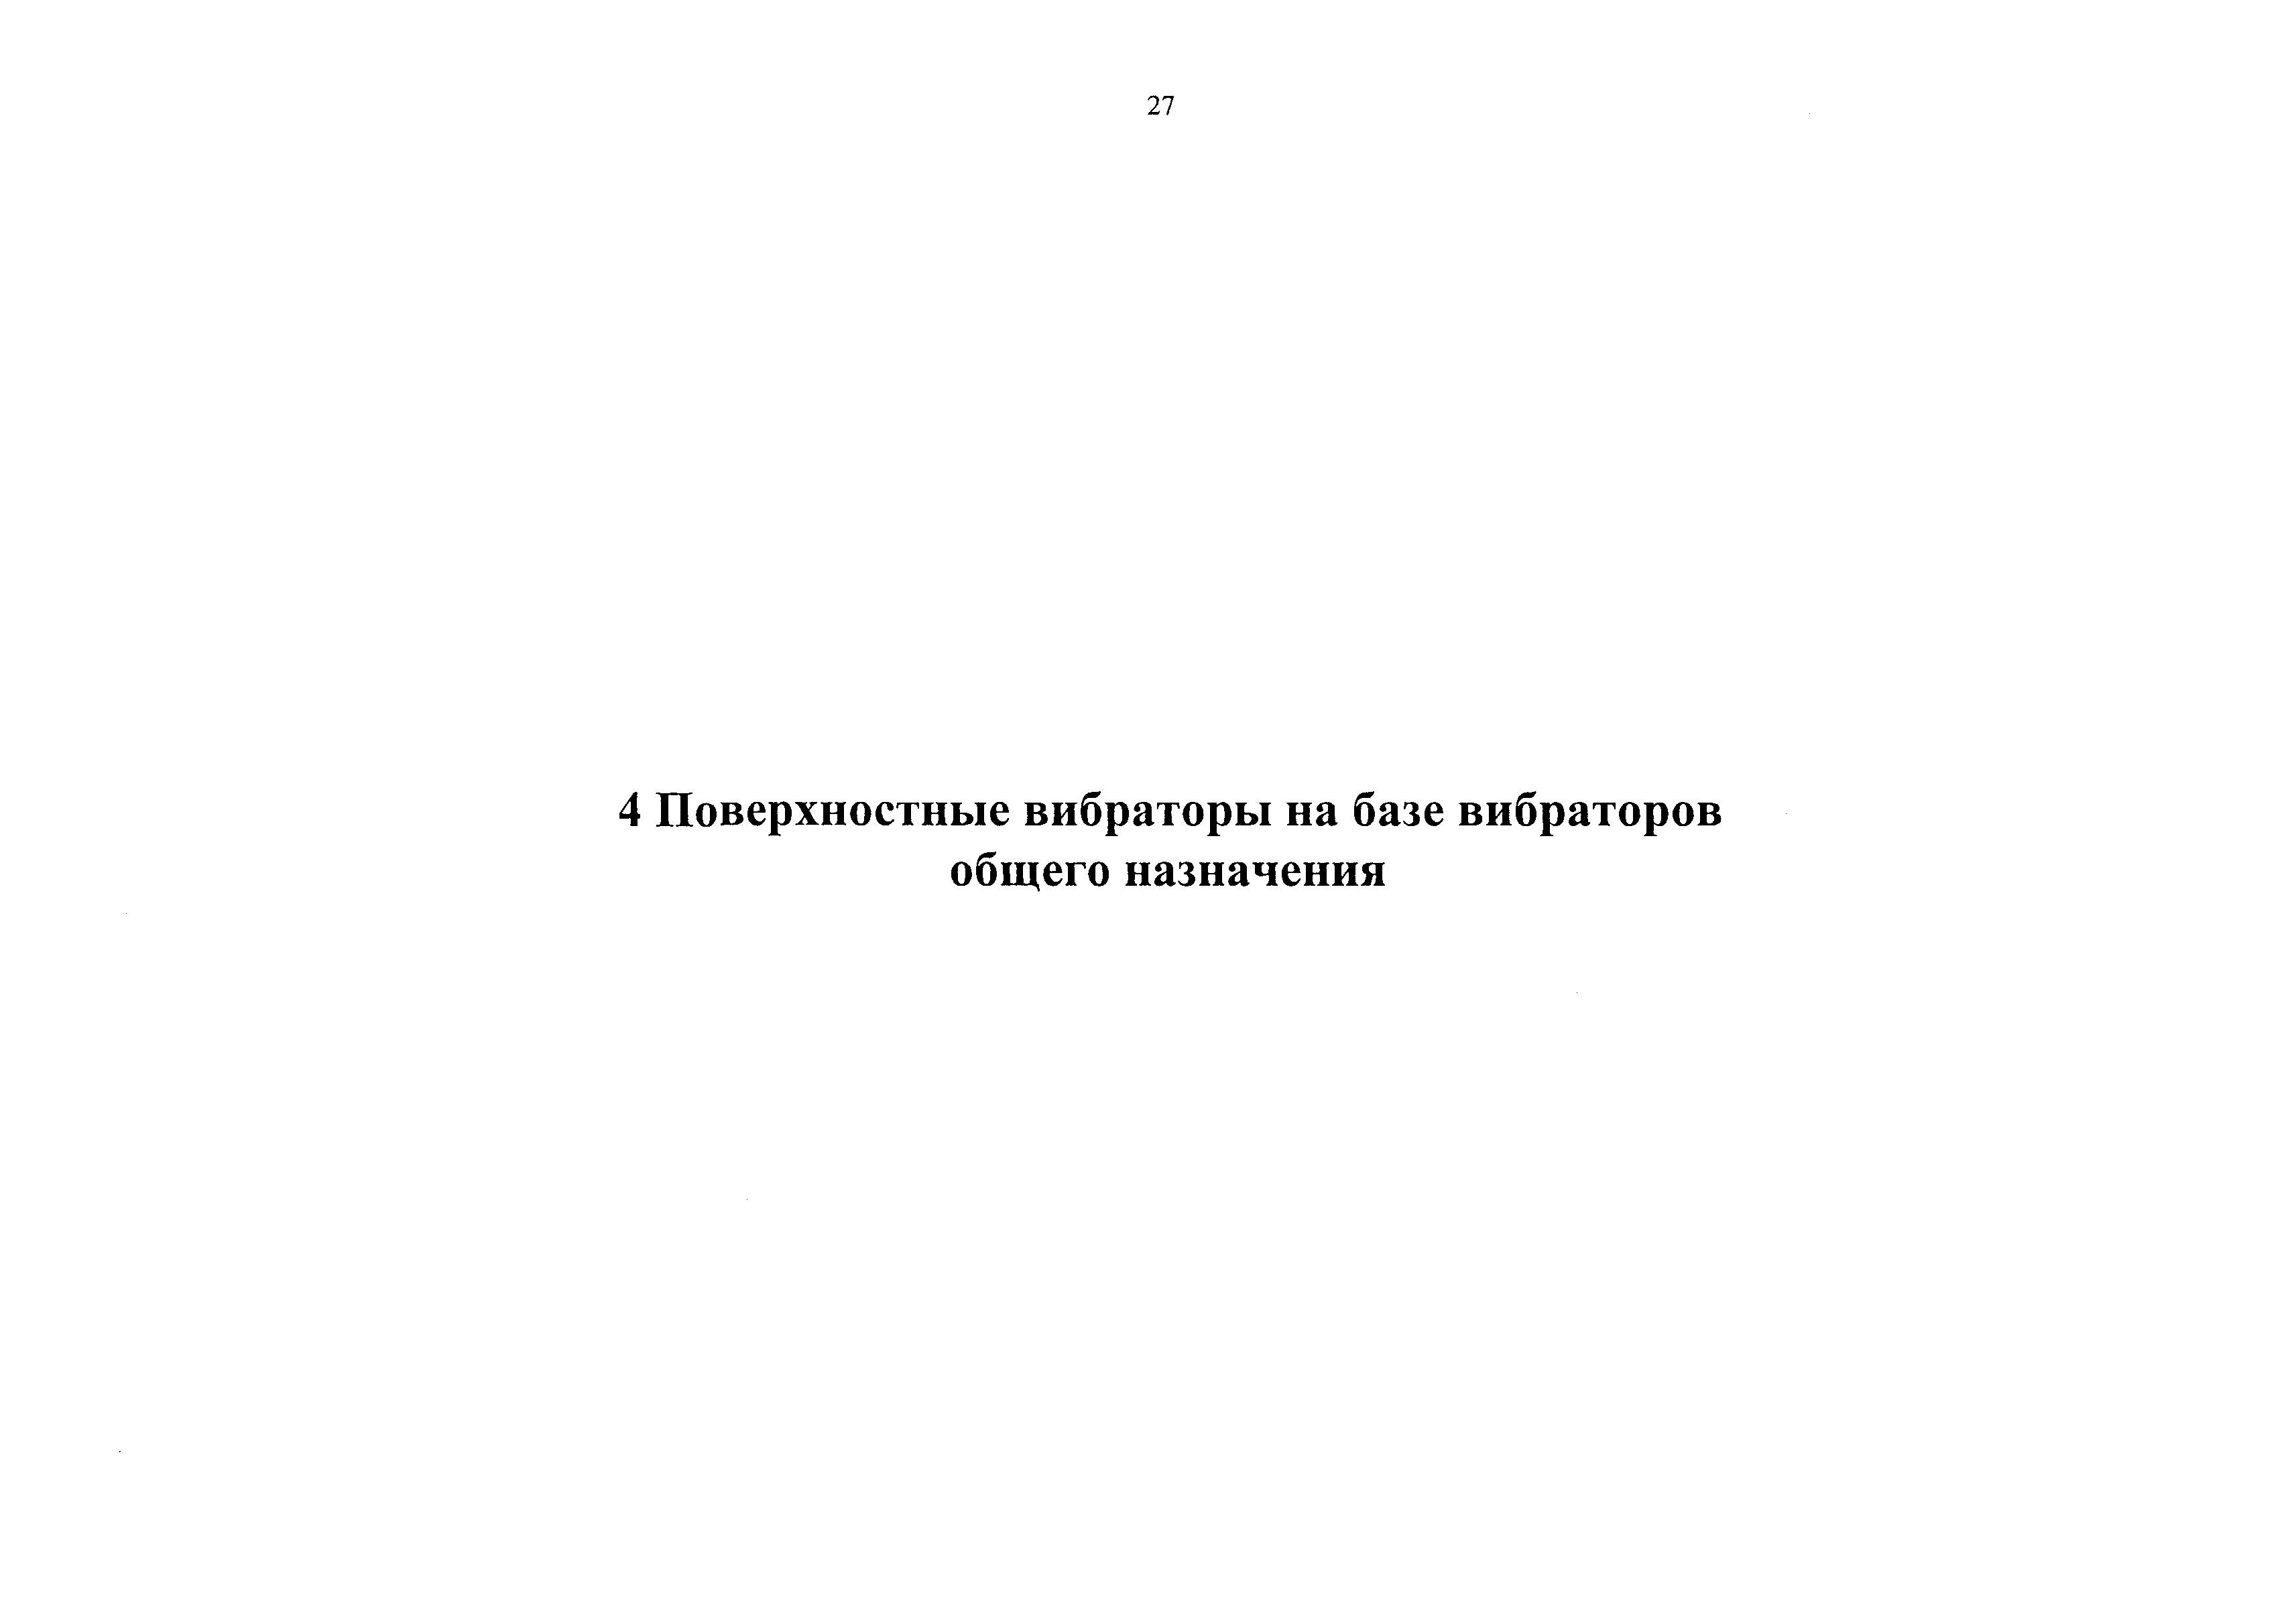 Каталог-справочник 7354